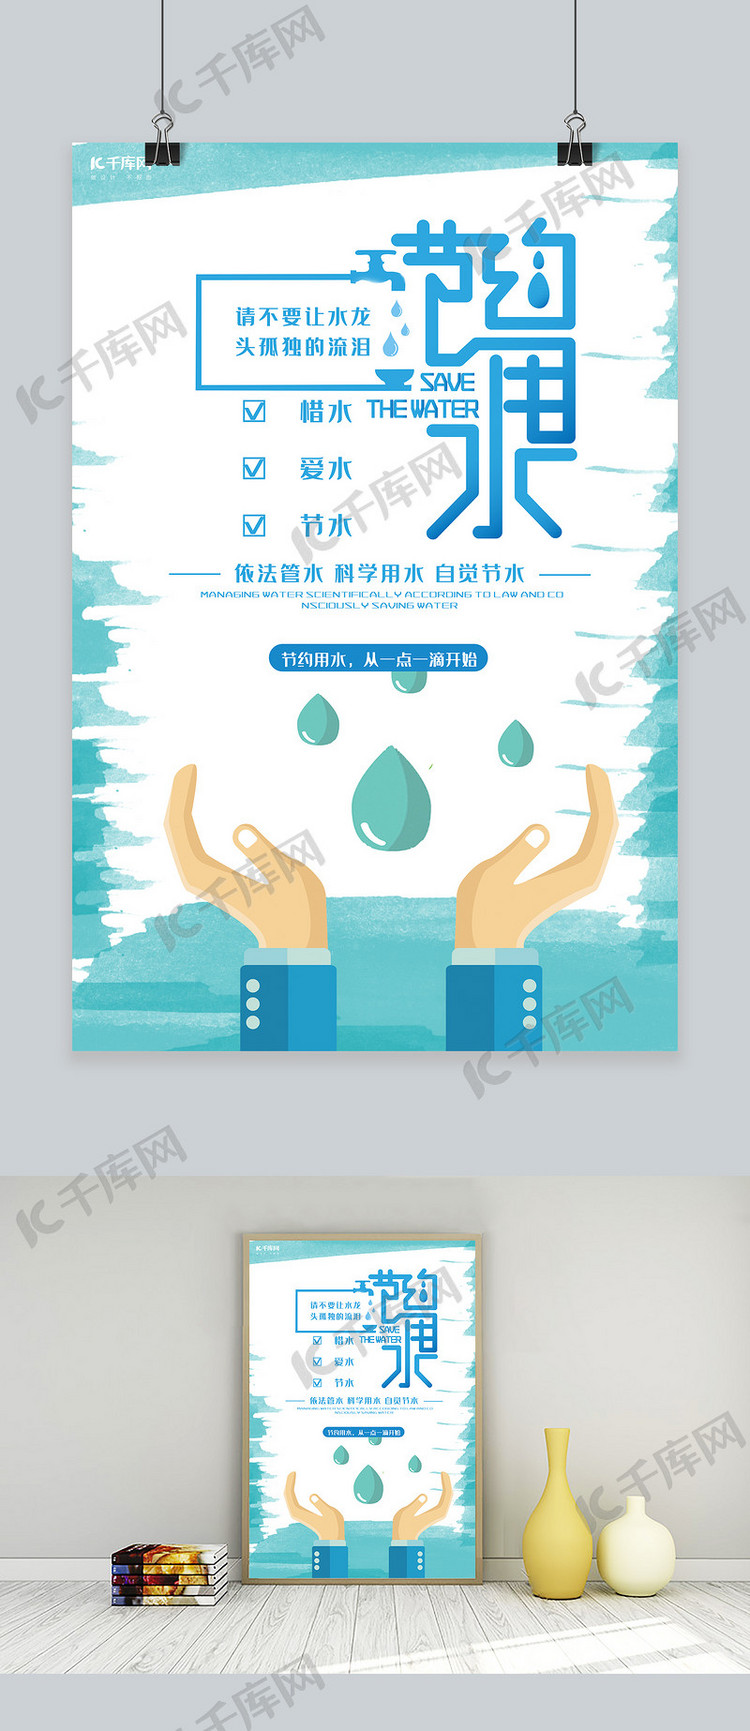 节约用水公益宣传推广海报